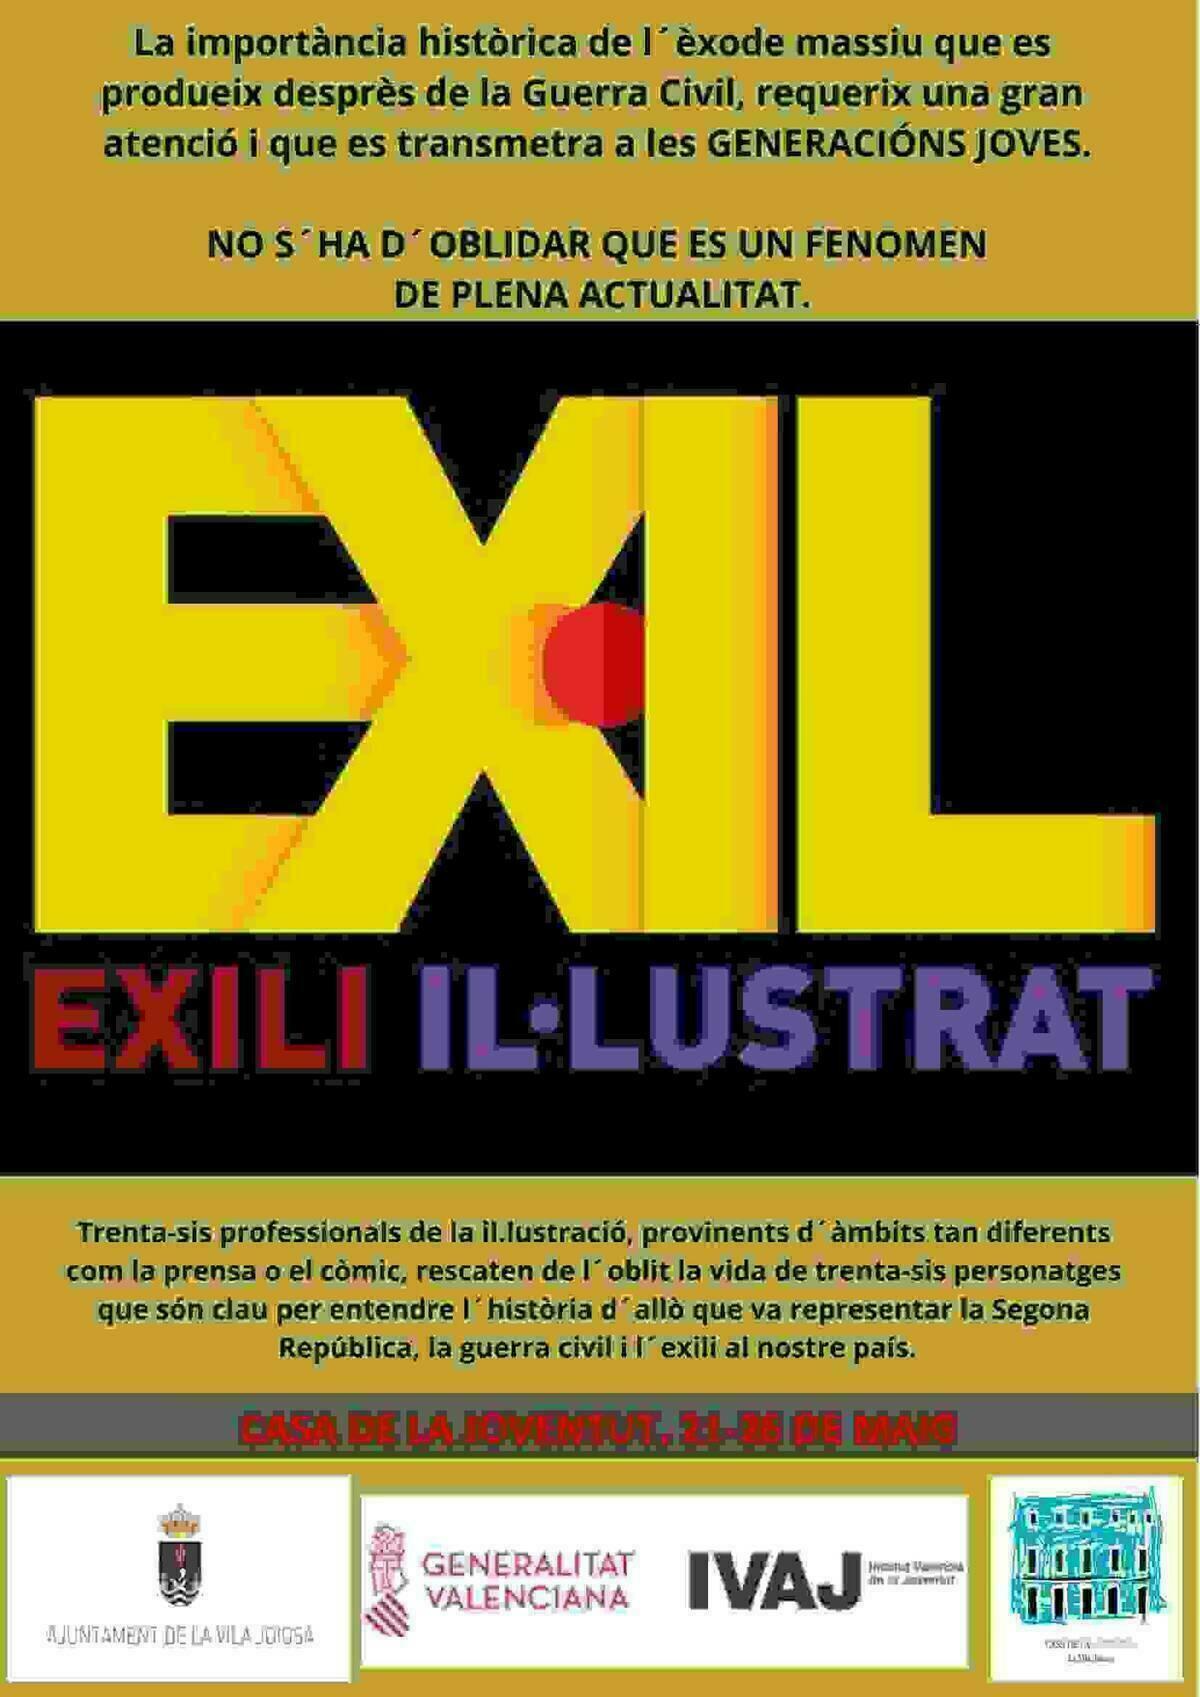 La Vila // La Casa de la Juventud acoge ‘Exili il•lustrat’, una muestra de 36 ilustraciones sobre el exilio en la Guerra Civil